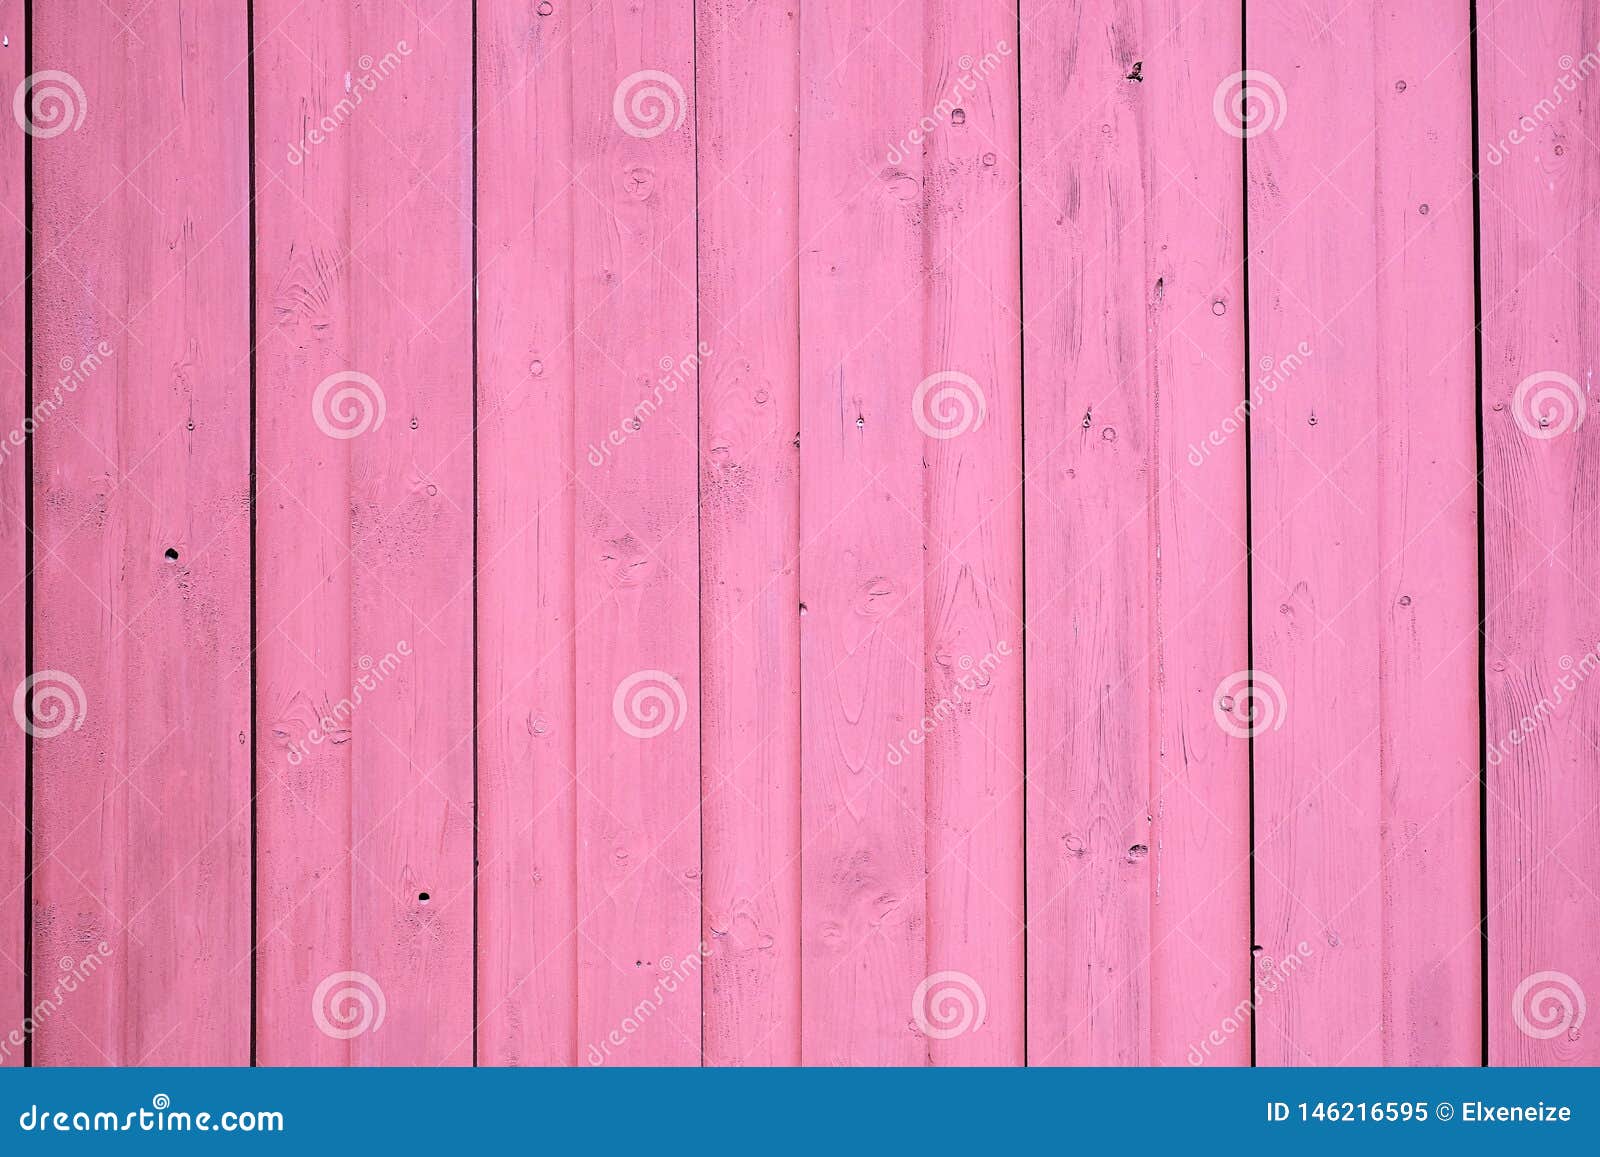 Hình nền màn hình gỗ màu hồng mang đến cho bạn sự ấm áp và gần gũi. Trong không gian công việc hay căn phòng riêng tư của mình, vẻ ngoài đầy tinh tế và trang trọng sẽ làm bạn cảm thấy thật sự thoải mái. Hãy xem hình ảnh liên quan đến từ khóa này để tận hưởng những mẫu hình nền hấp dẫn nhất.